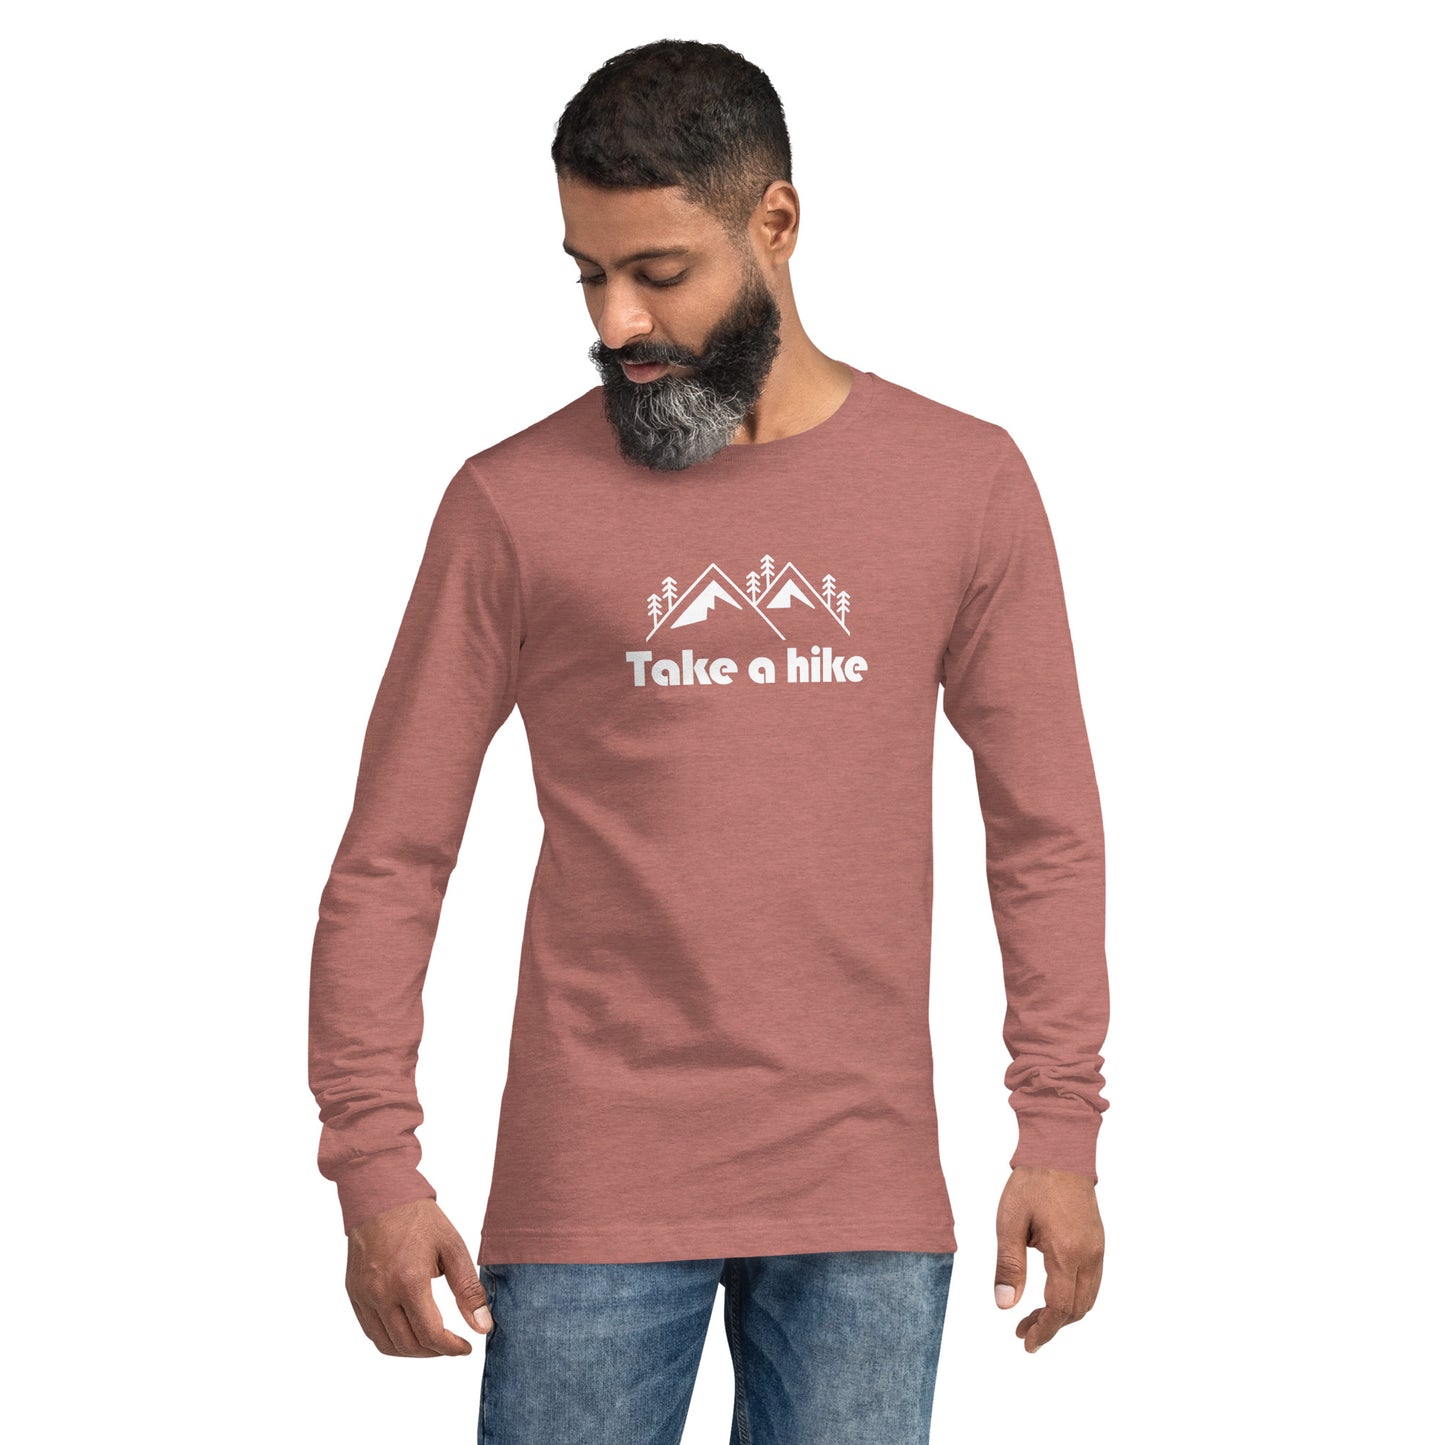 Men's Premium Long Sleeve Tee (Take a Hike)